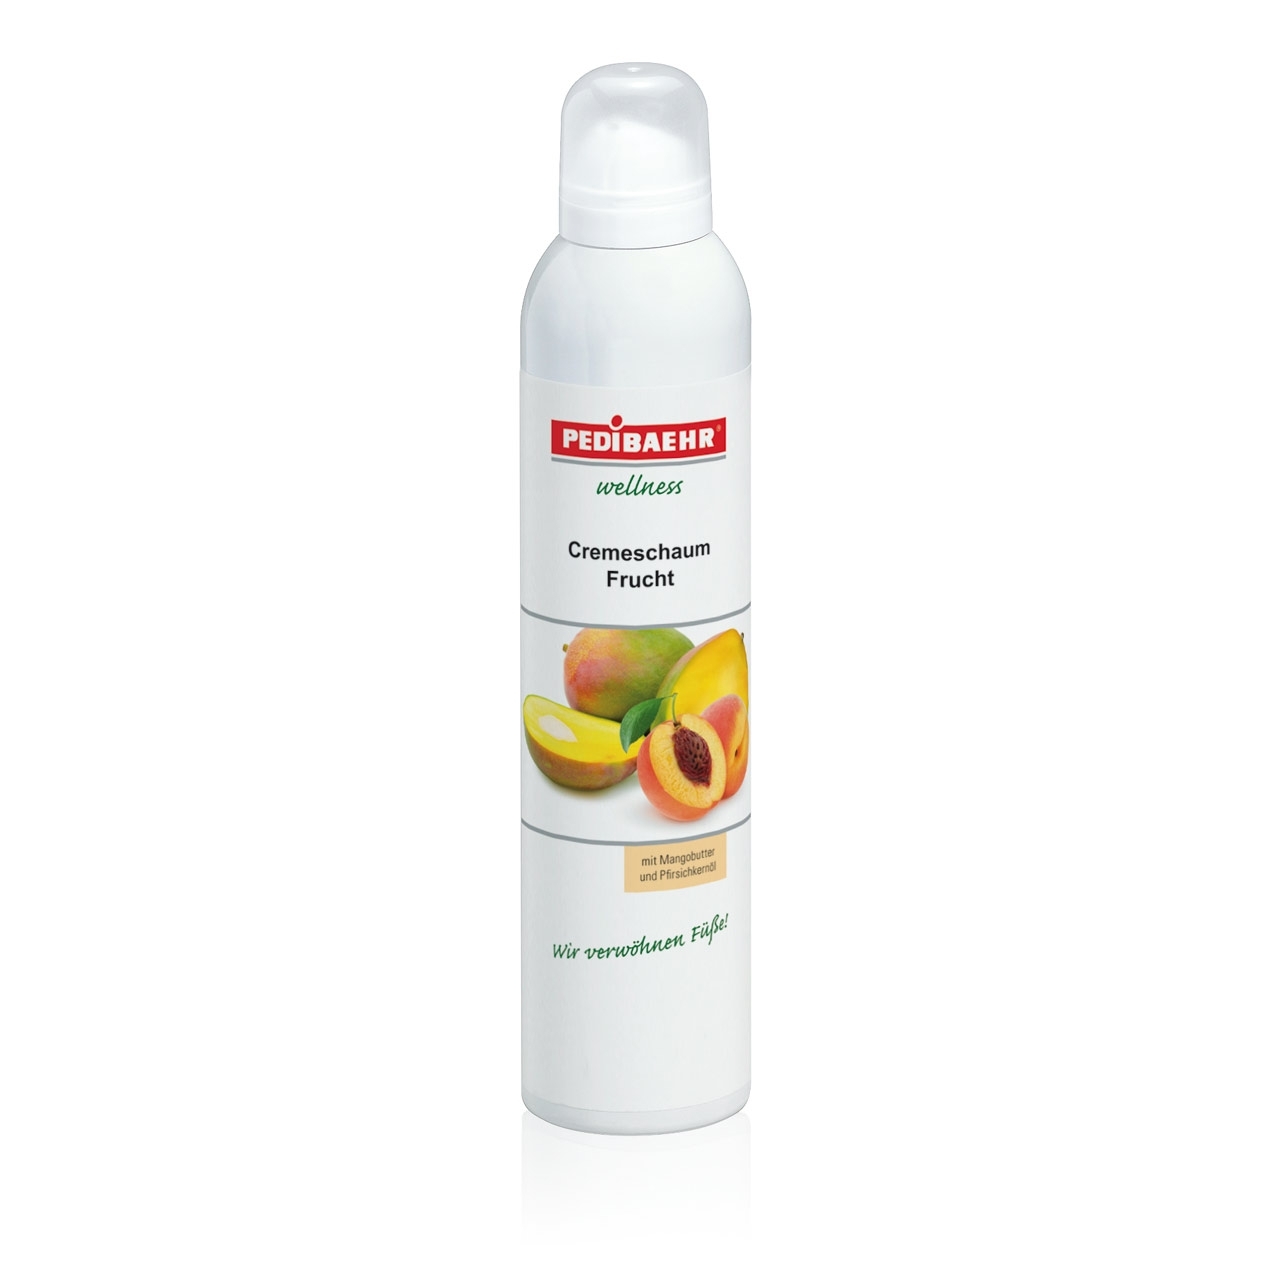 PEDIBAEHR - Wellness Cremeschaum Frucht, 300 ml